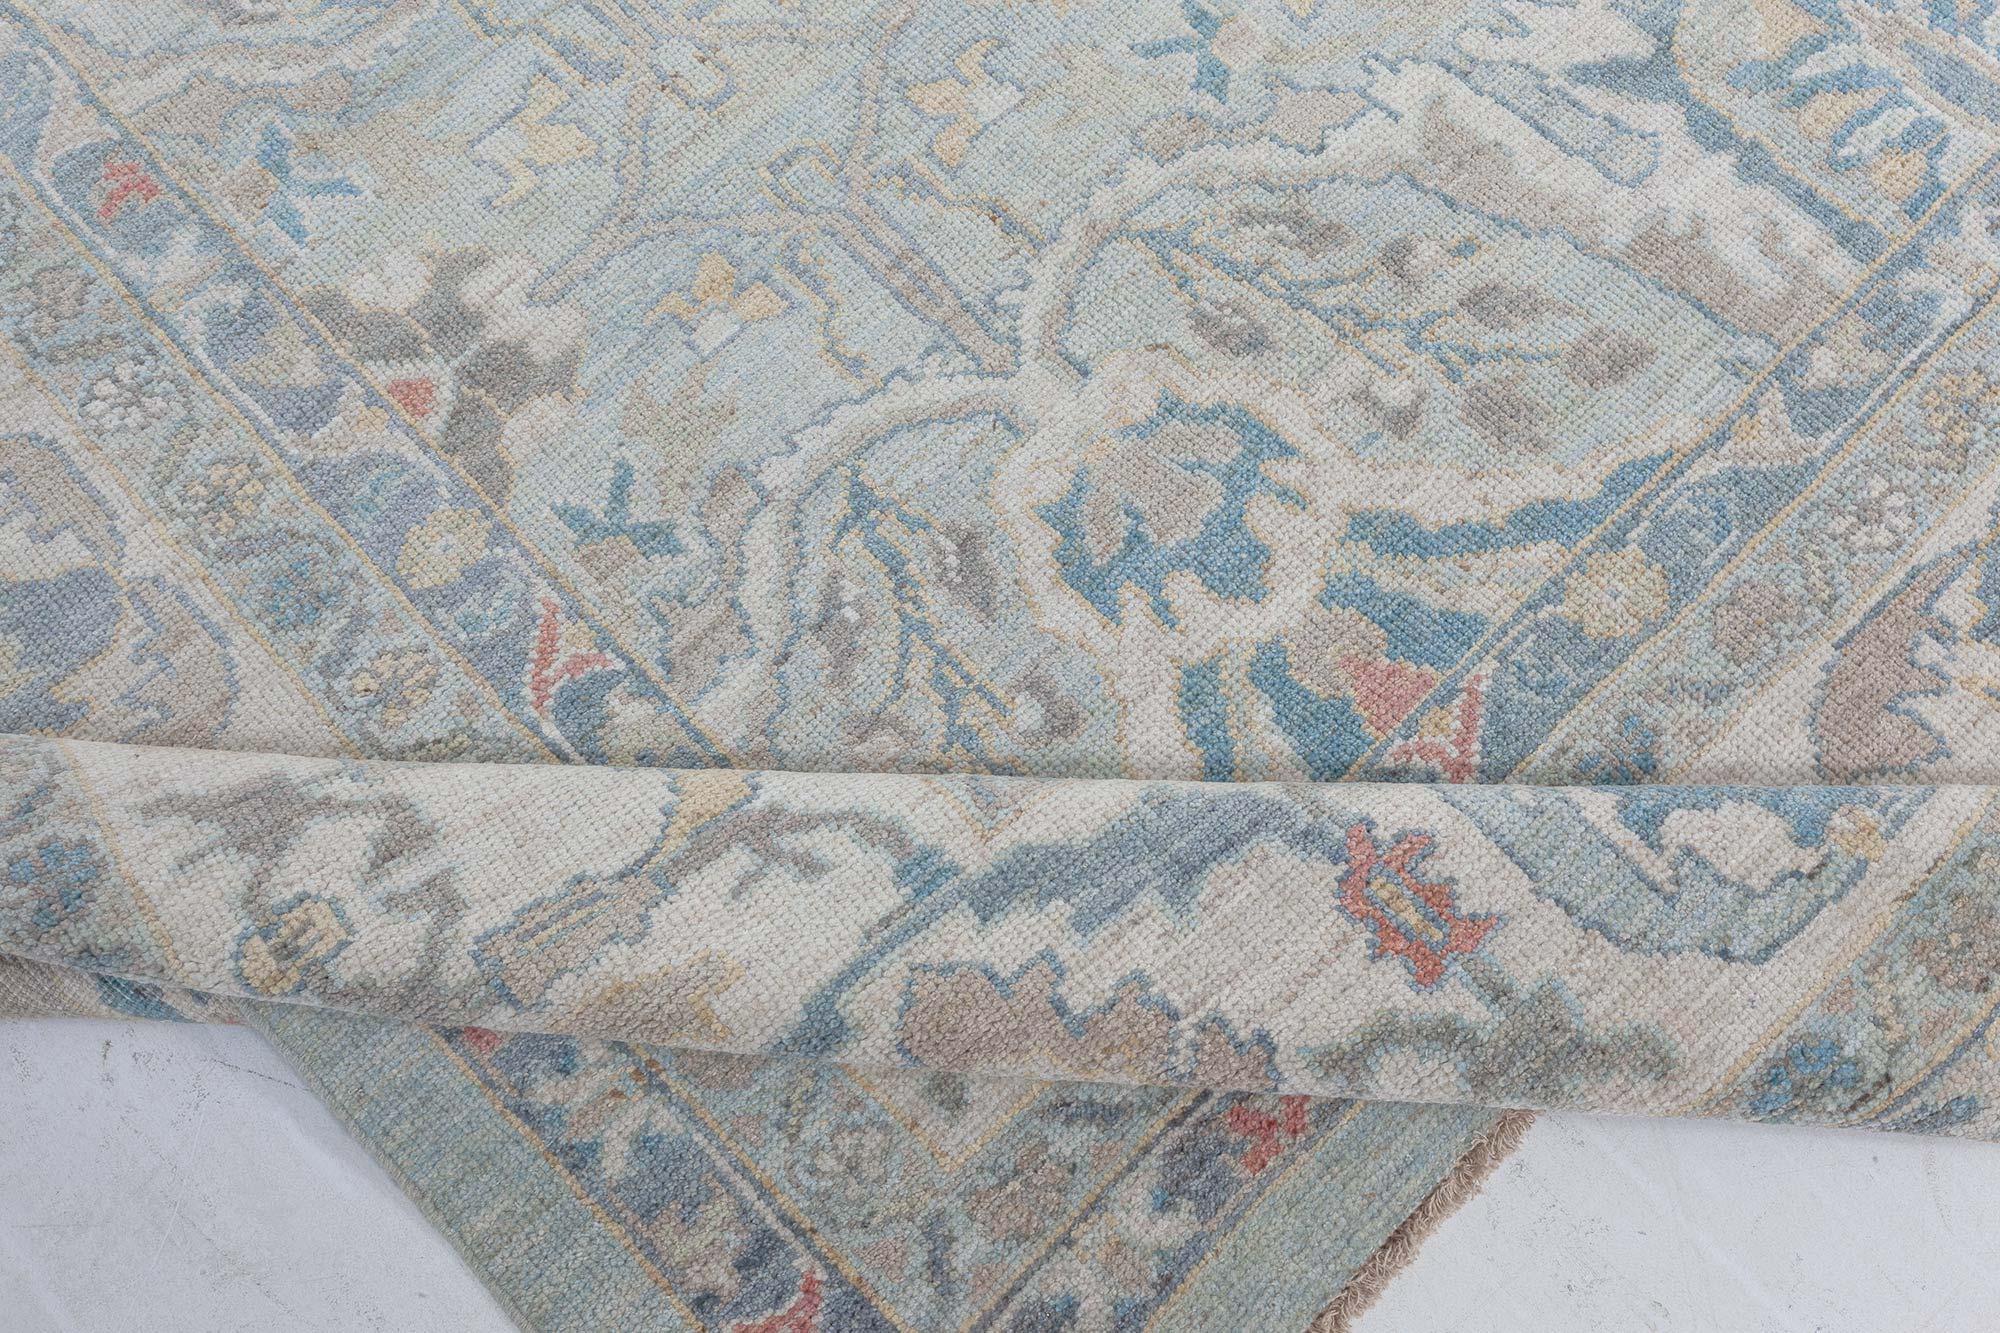 Traditioneller, inspirierter Teppich von Doris Leslie Blau
Größe: 13'4